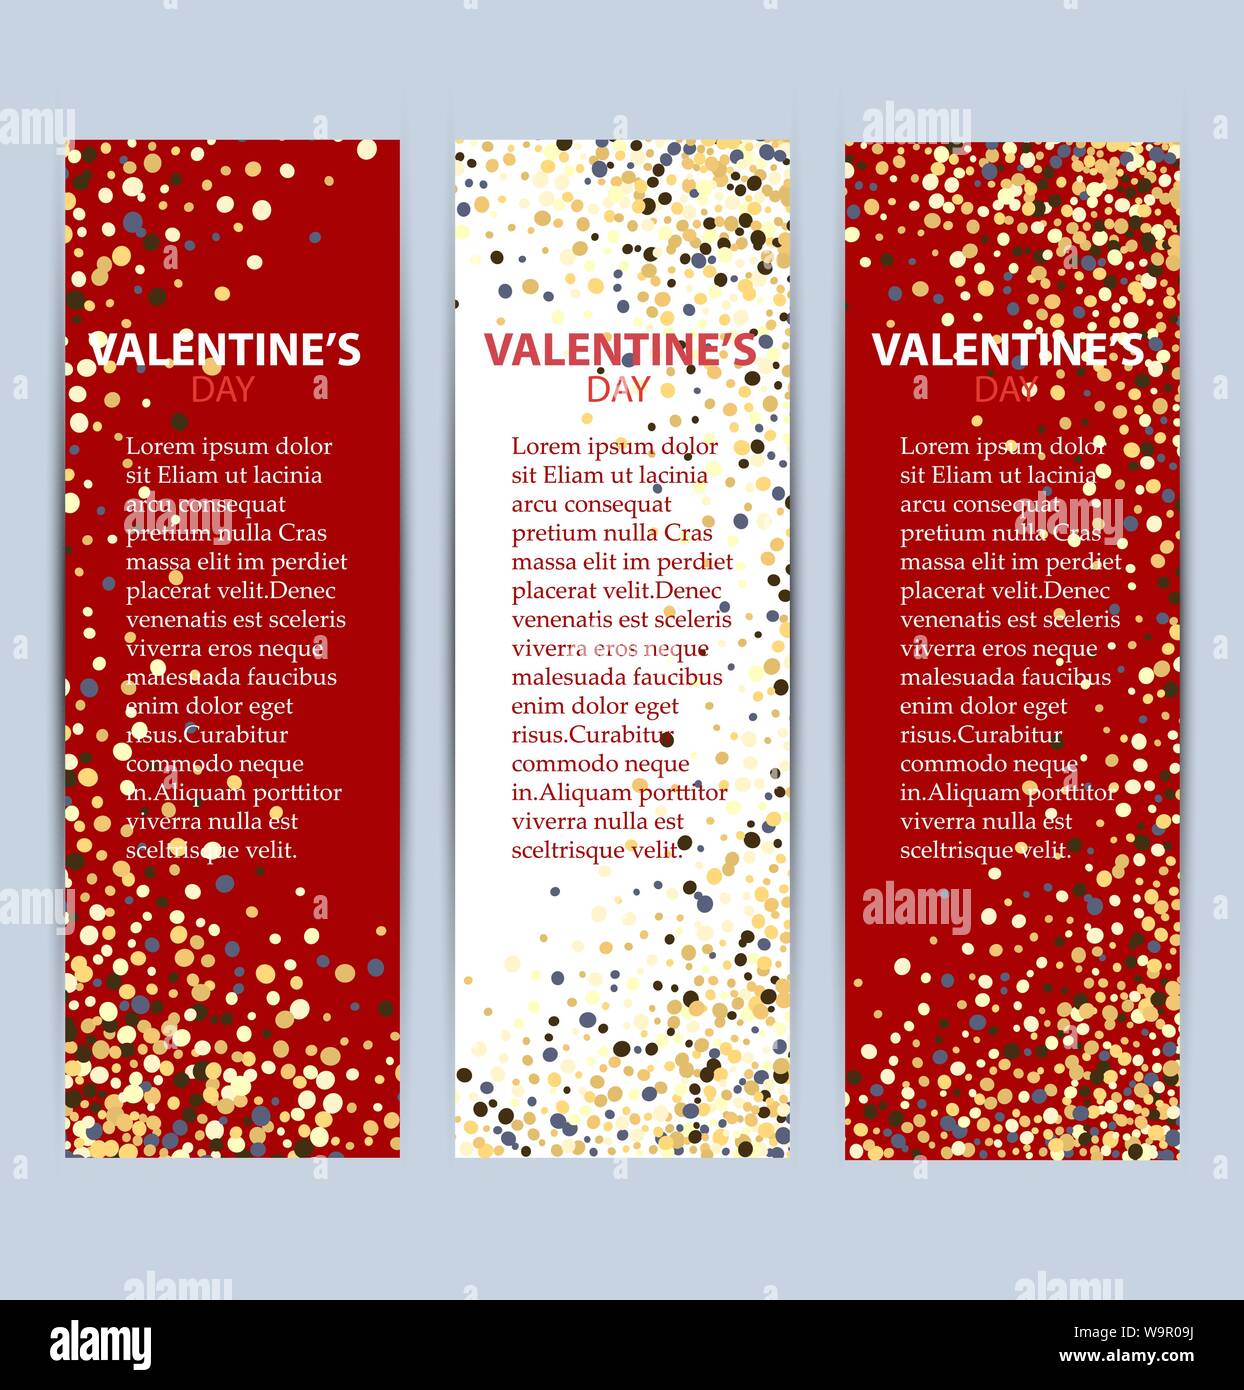 San Valentino collezione vendita banner eps10 Illustrazione Vettoriale